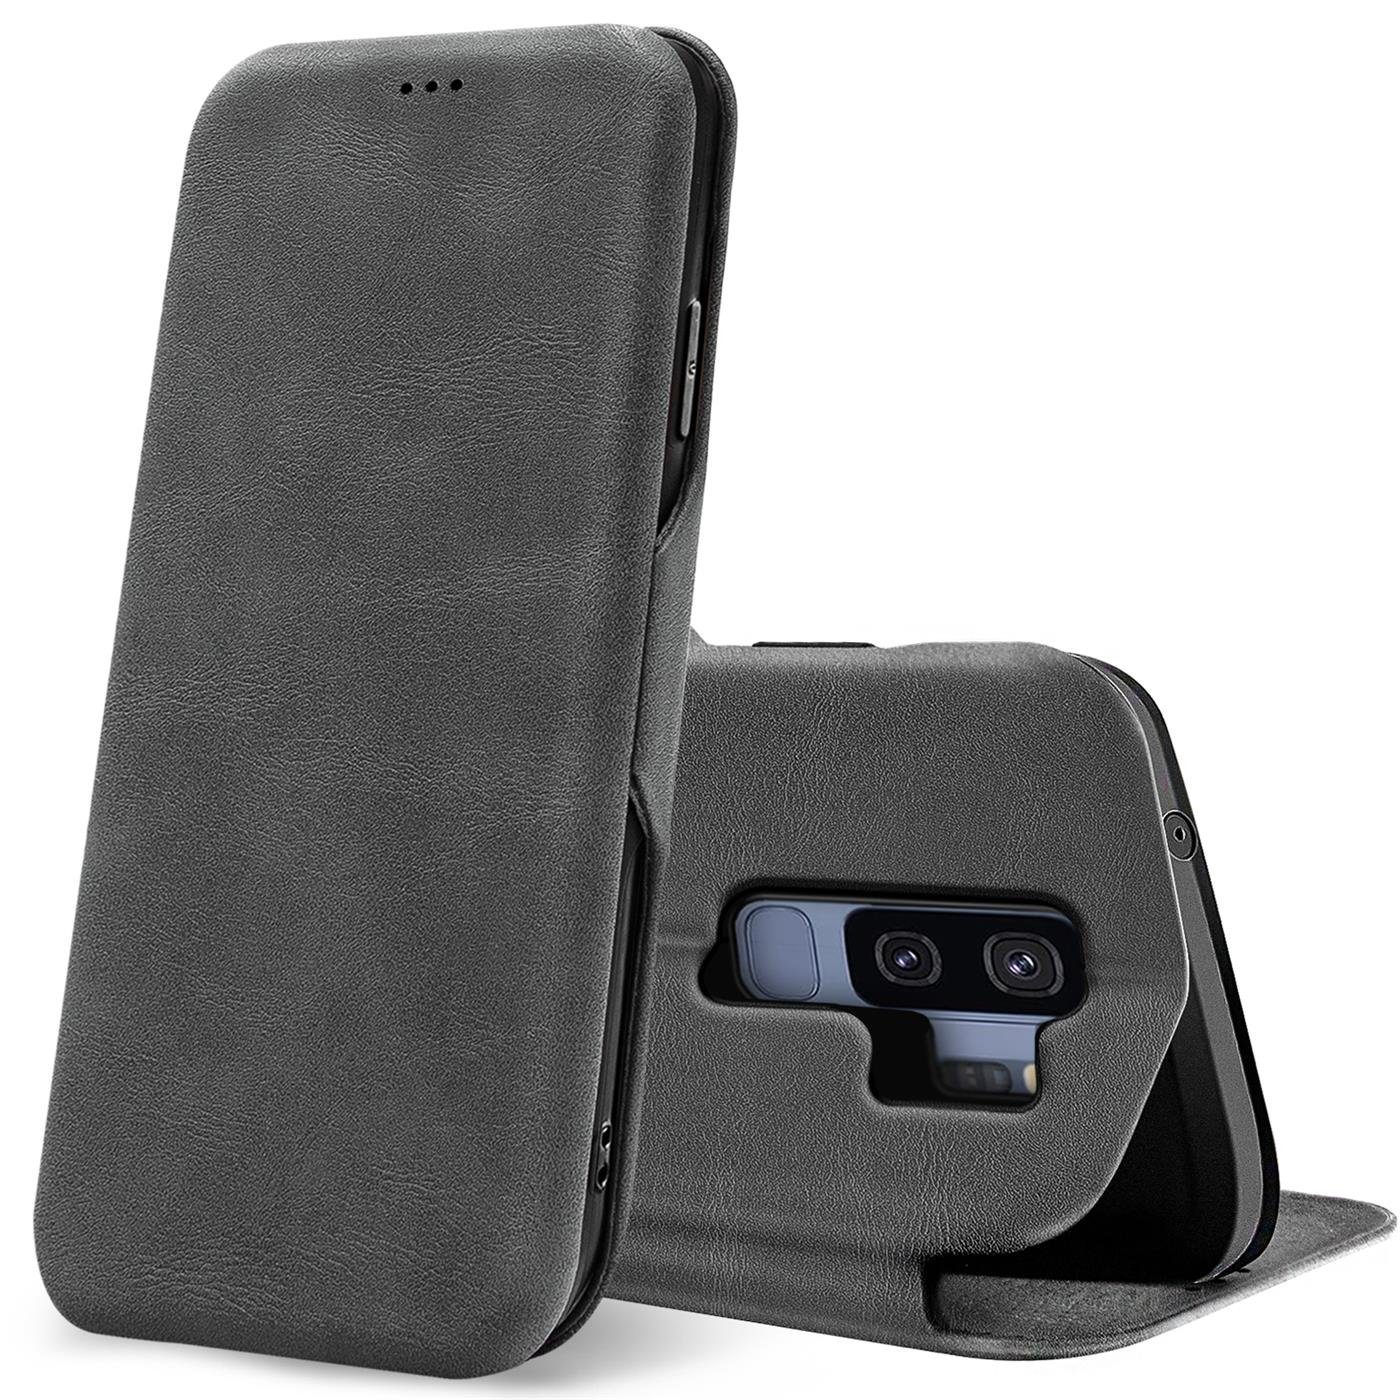 CoolGadget Handyhülle »Business Premium Hülle« für Samsung Galaxy S9 Plus  6,2 Zoll, Handy Tasche mit Kartenfach für Samsung S9+ Schutzhülle Case  online kaufen | OTTO